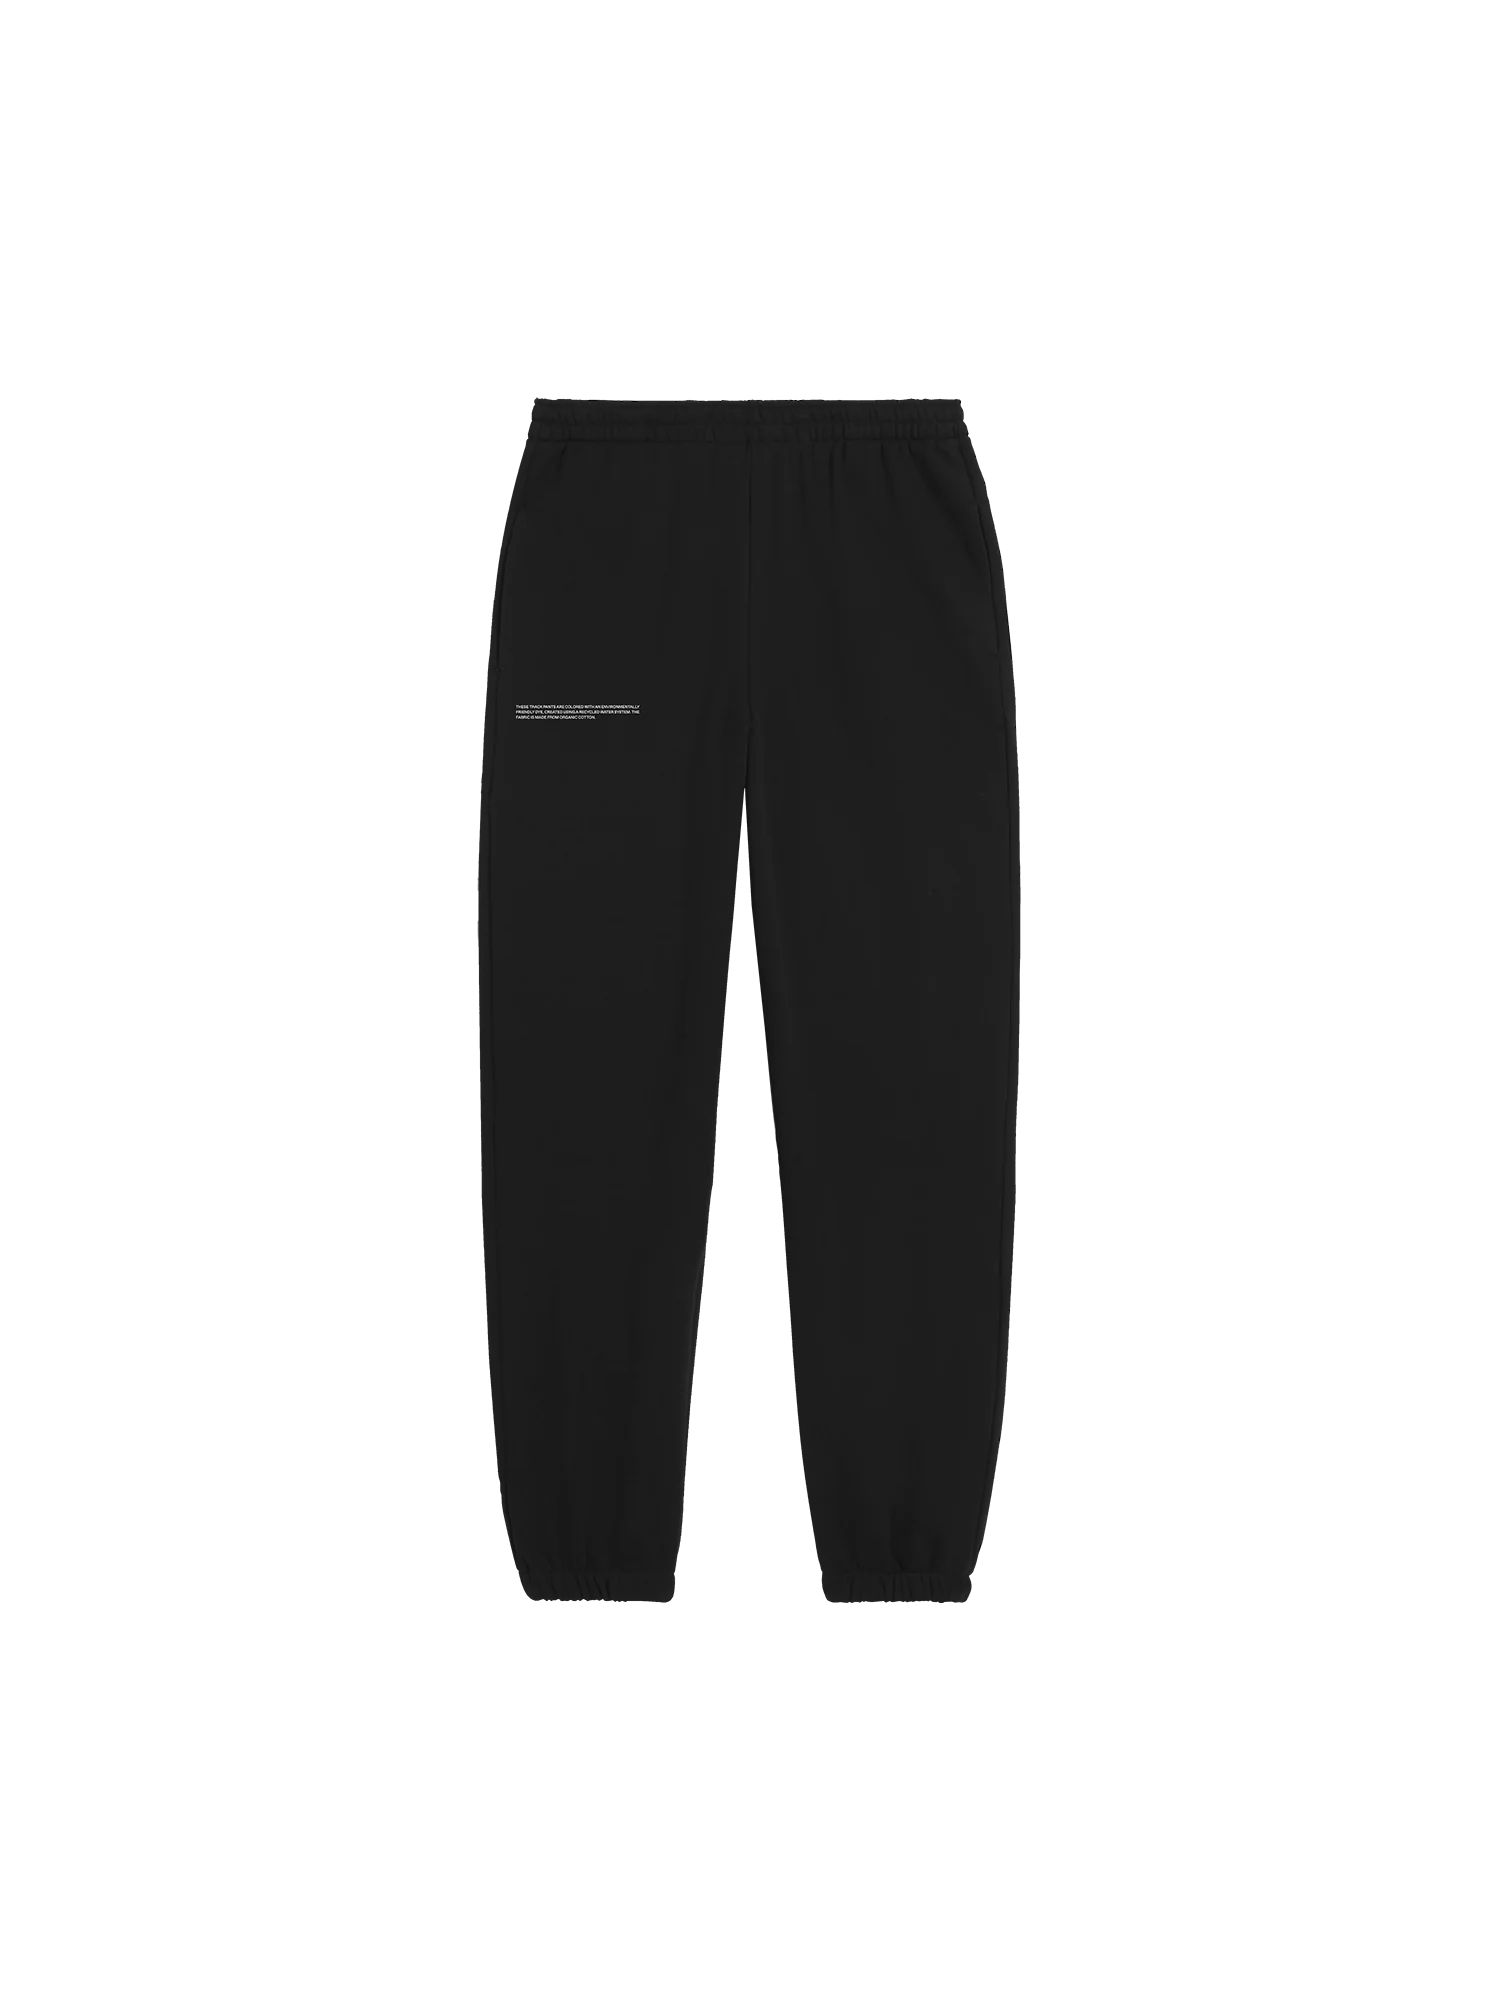 365 Midweight Track Pants - black | The Pangaia (EU, UK, AUS)